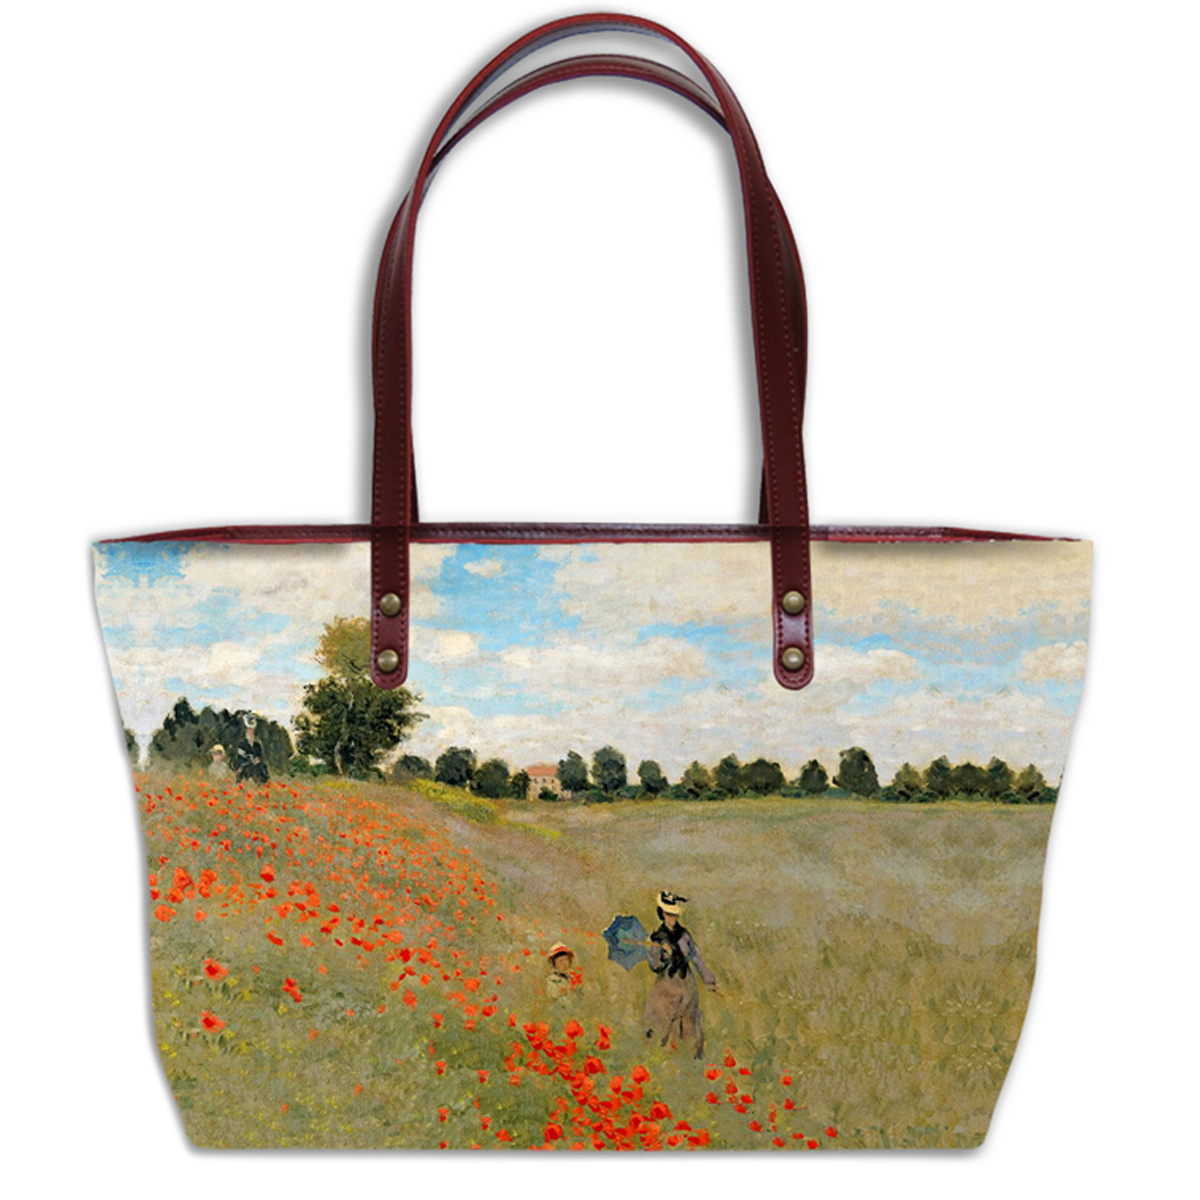 Sac créateur artisanal \'Claude Monet\' (Les Coquelicots)  - 44x27x14 cm - [Q9238]